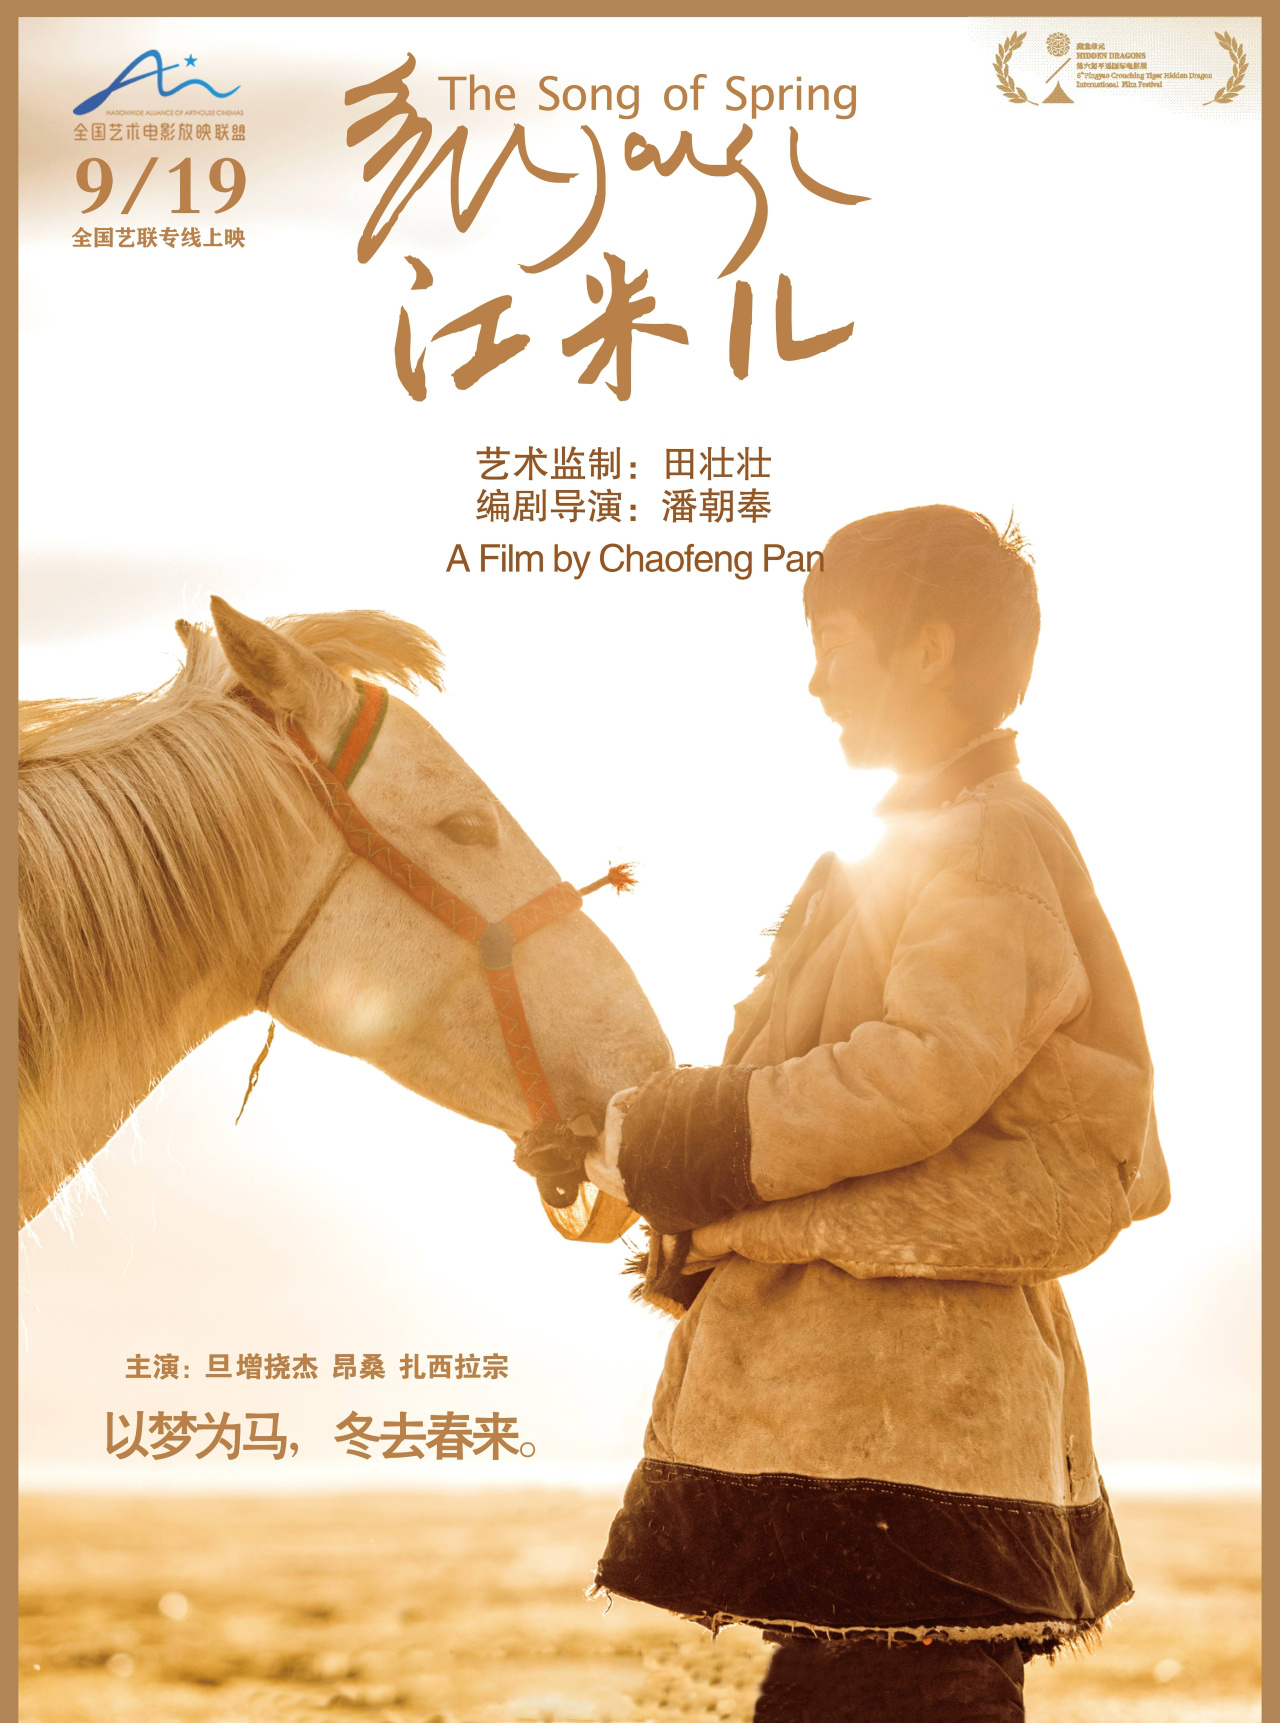 感受马背上的少年梦——田壮壮监制的电影《江米儿》上映